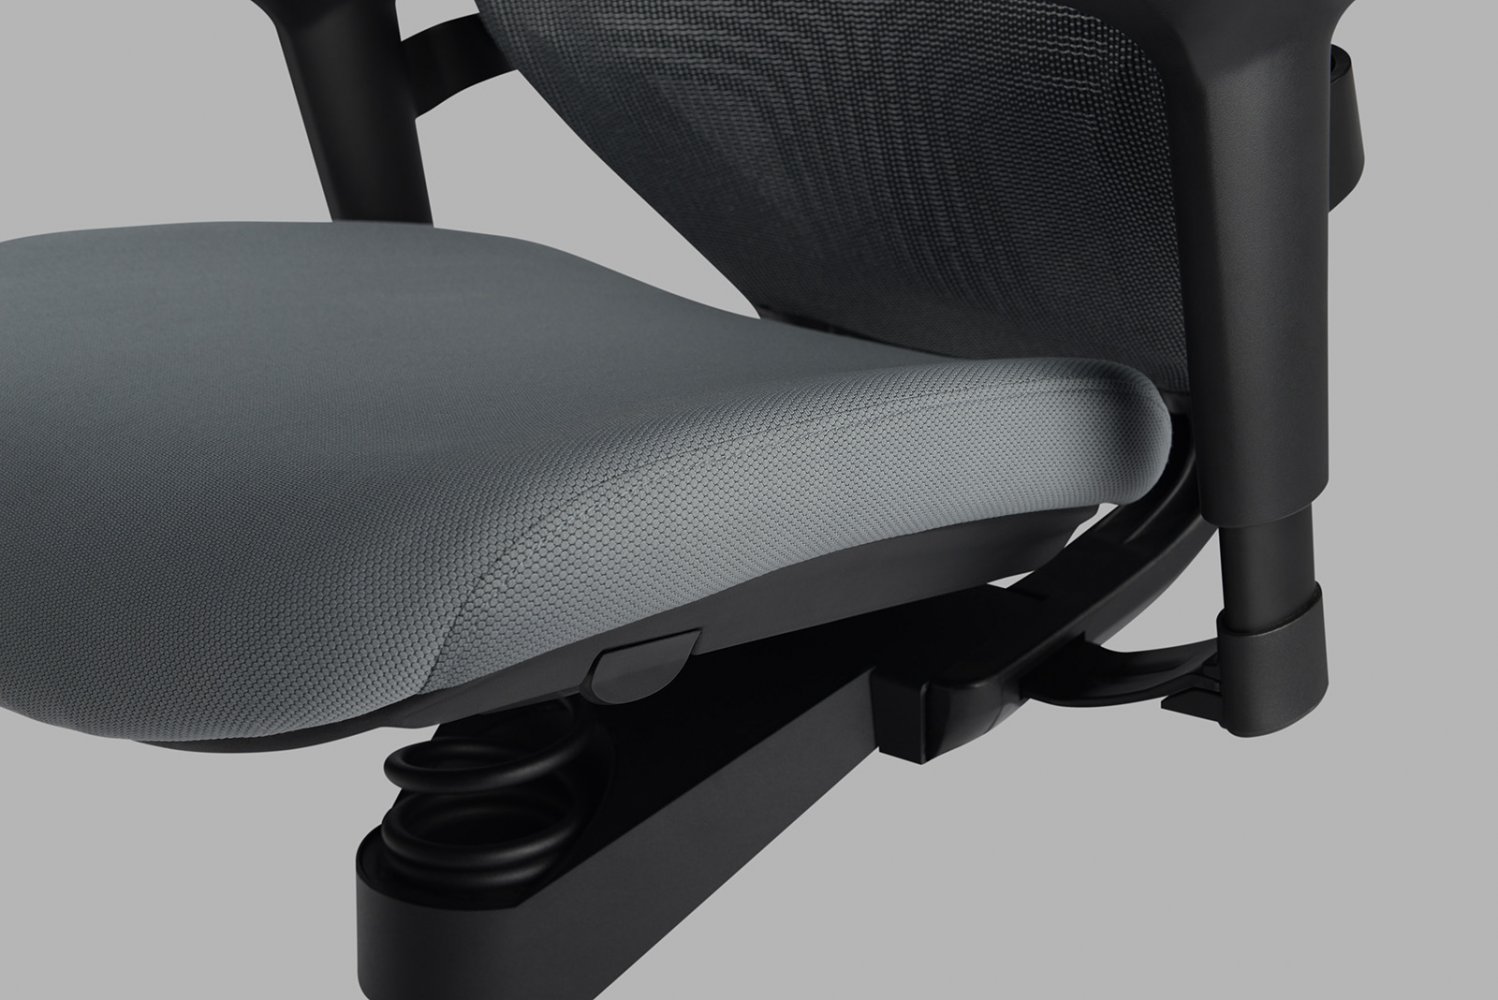 Adaptic Xtreme kancelárska zdravotná stolička